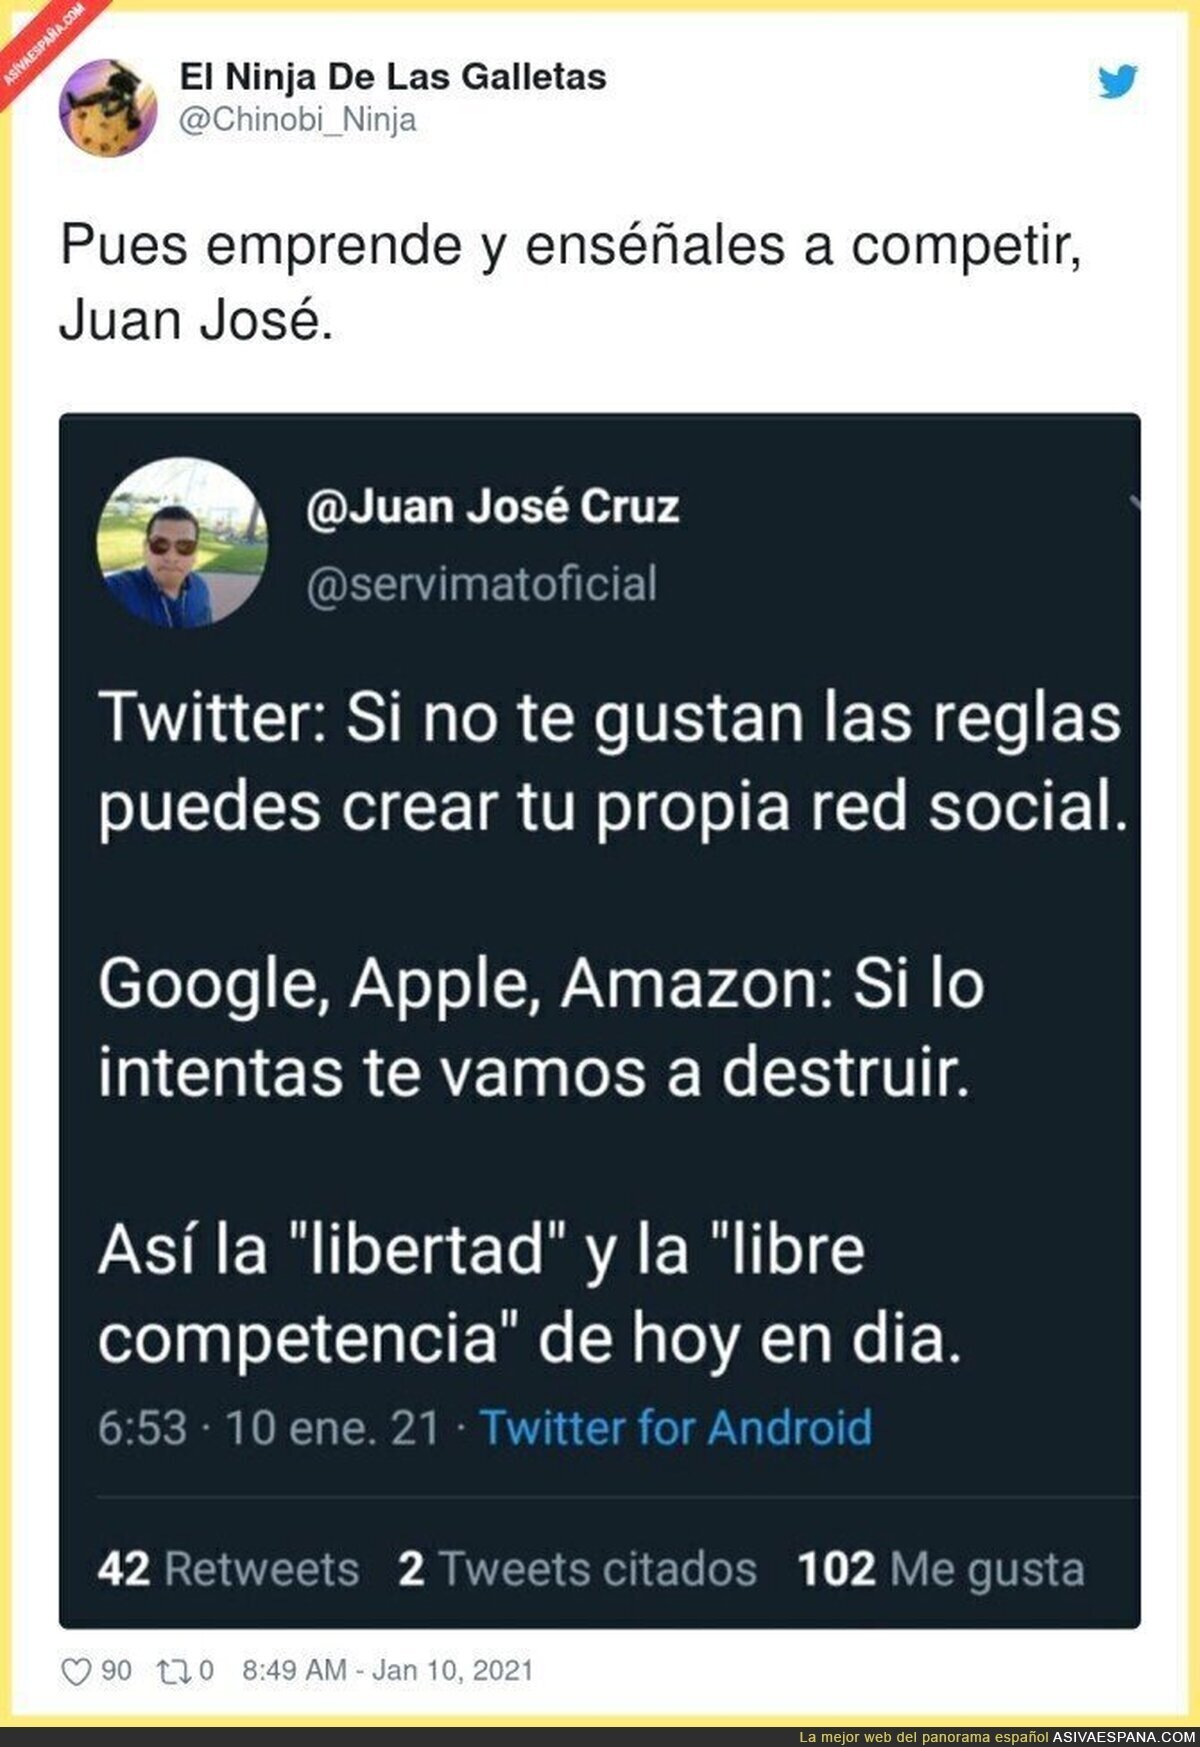 Juan José empezará su lucha contra Google, Apple y Amazon porque es muy listo